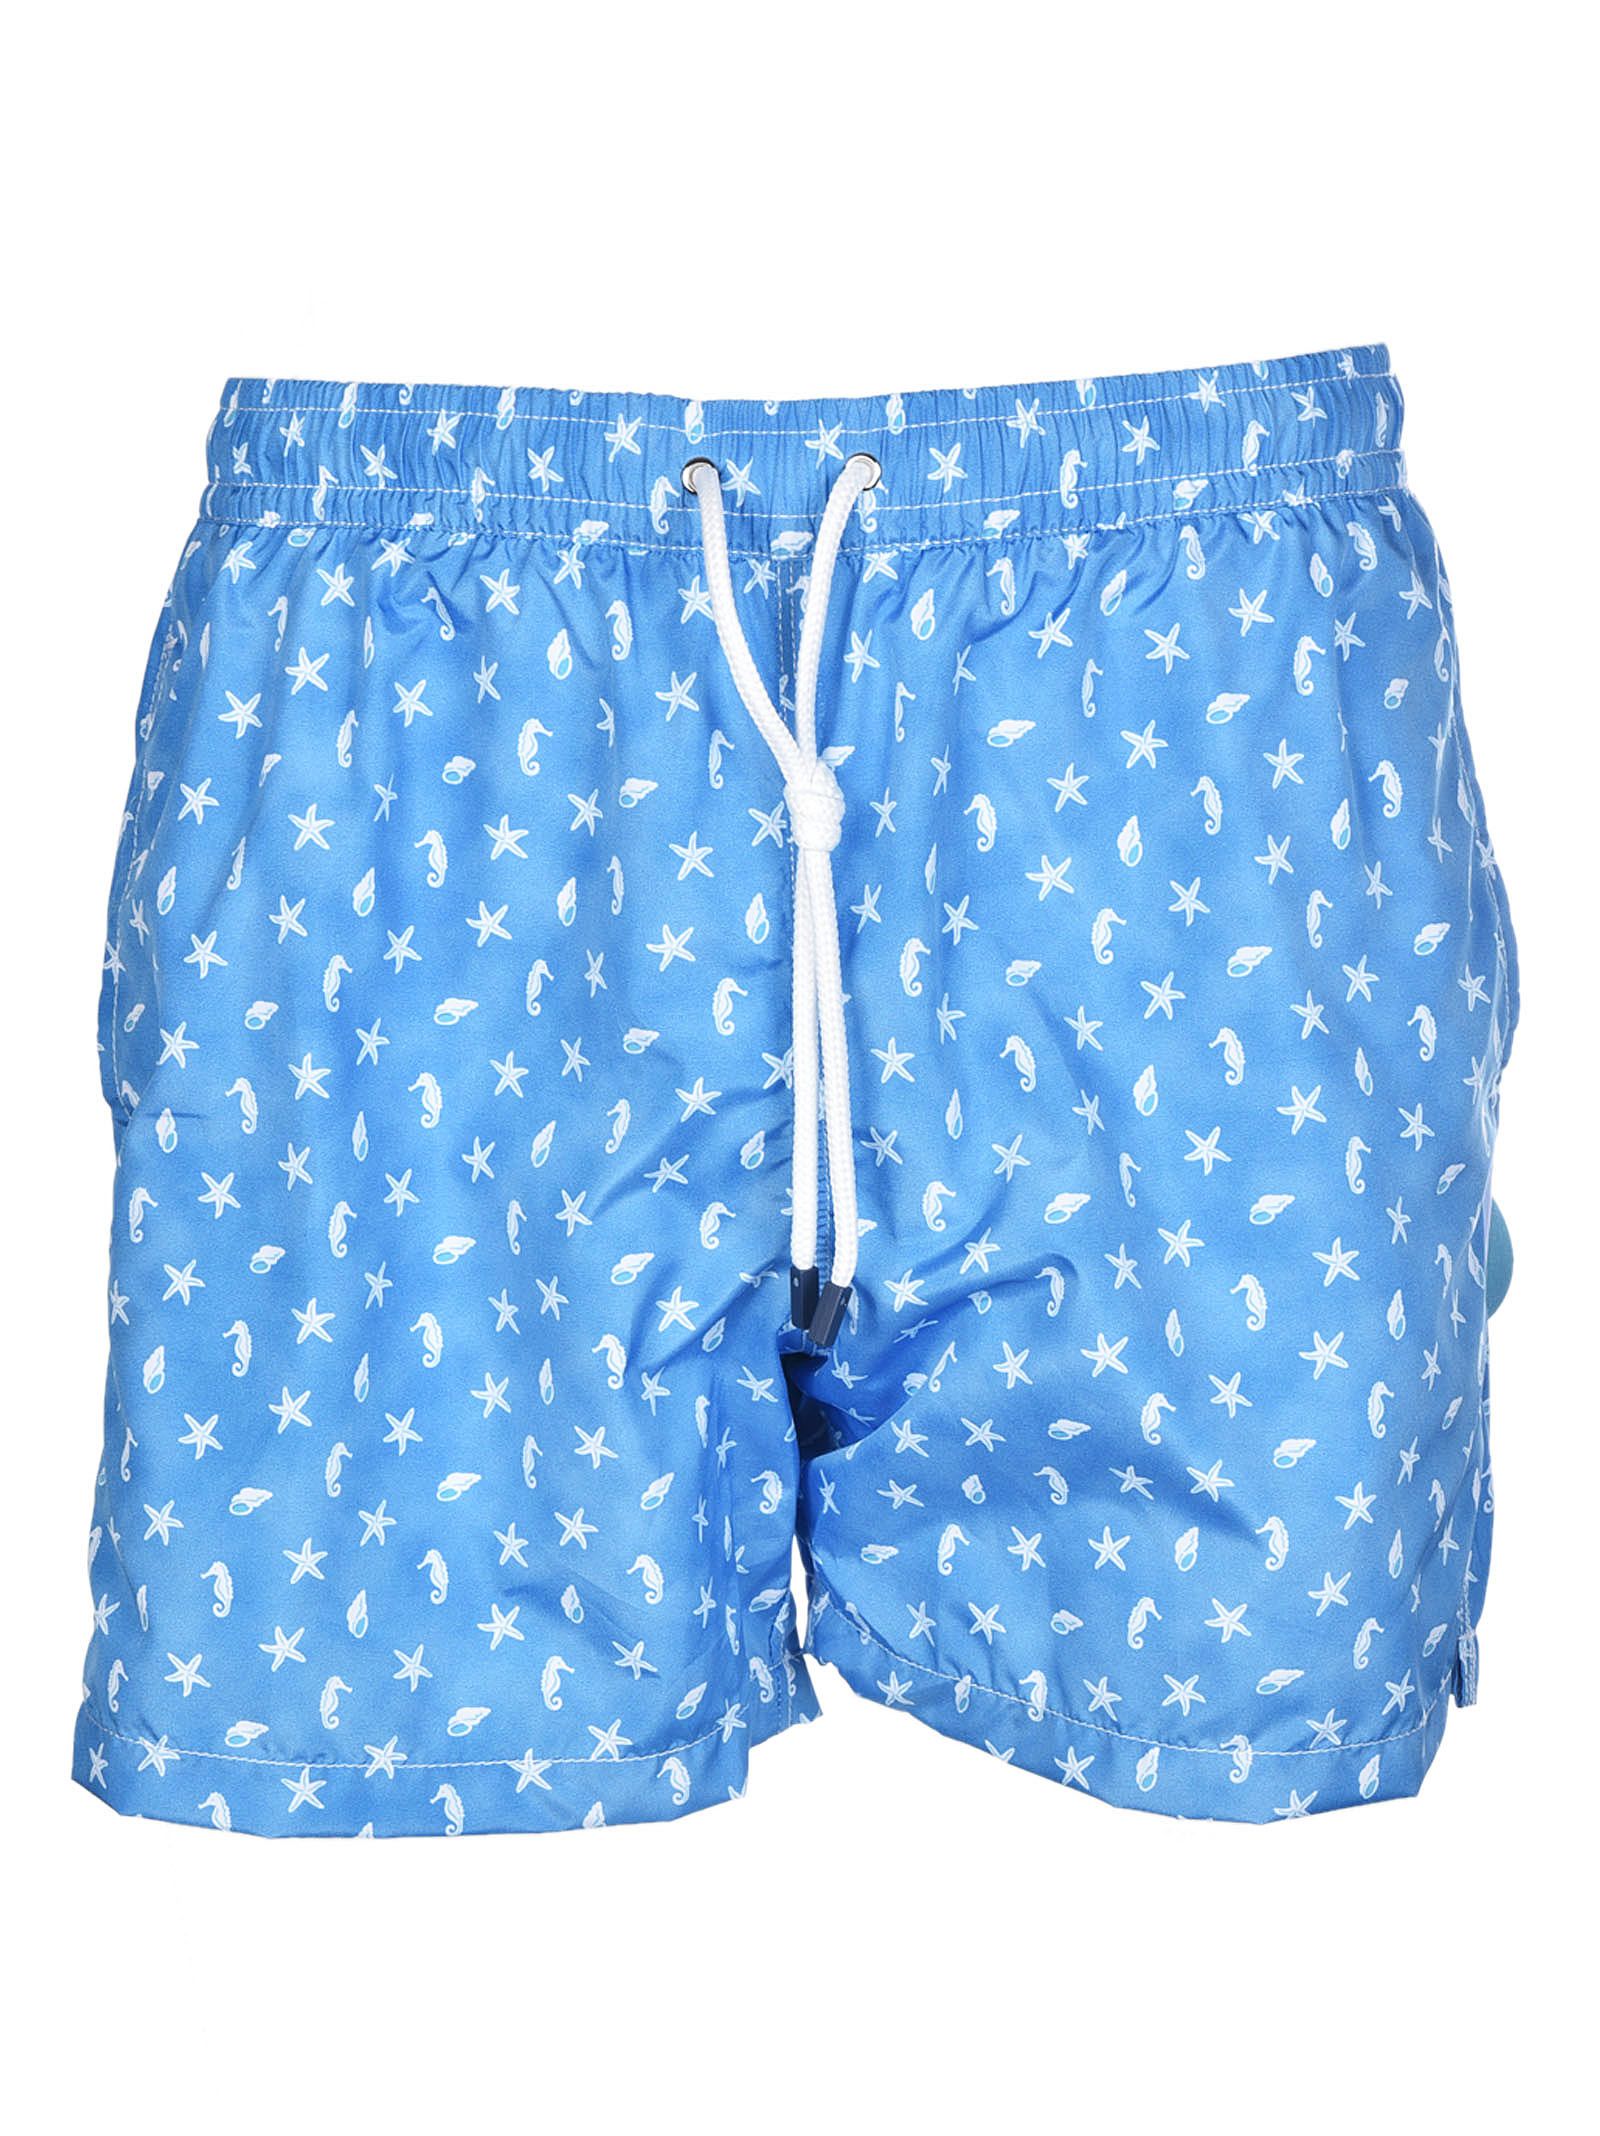 Fedeli - Fedeli Printed Swim Shorts - Blue/White, Men's Swimming Trunks ...